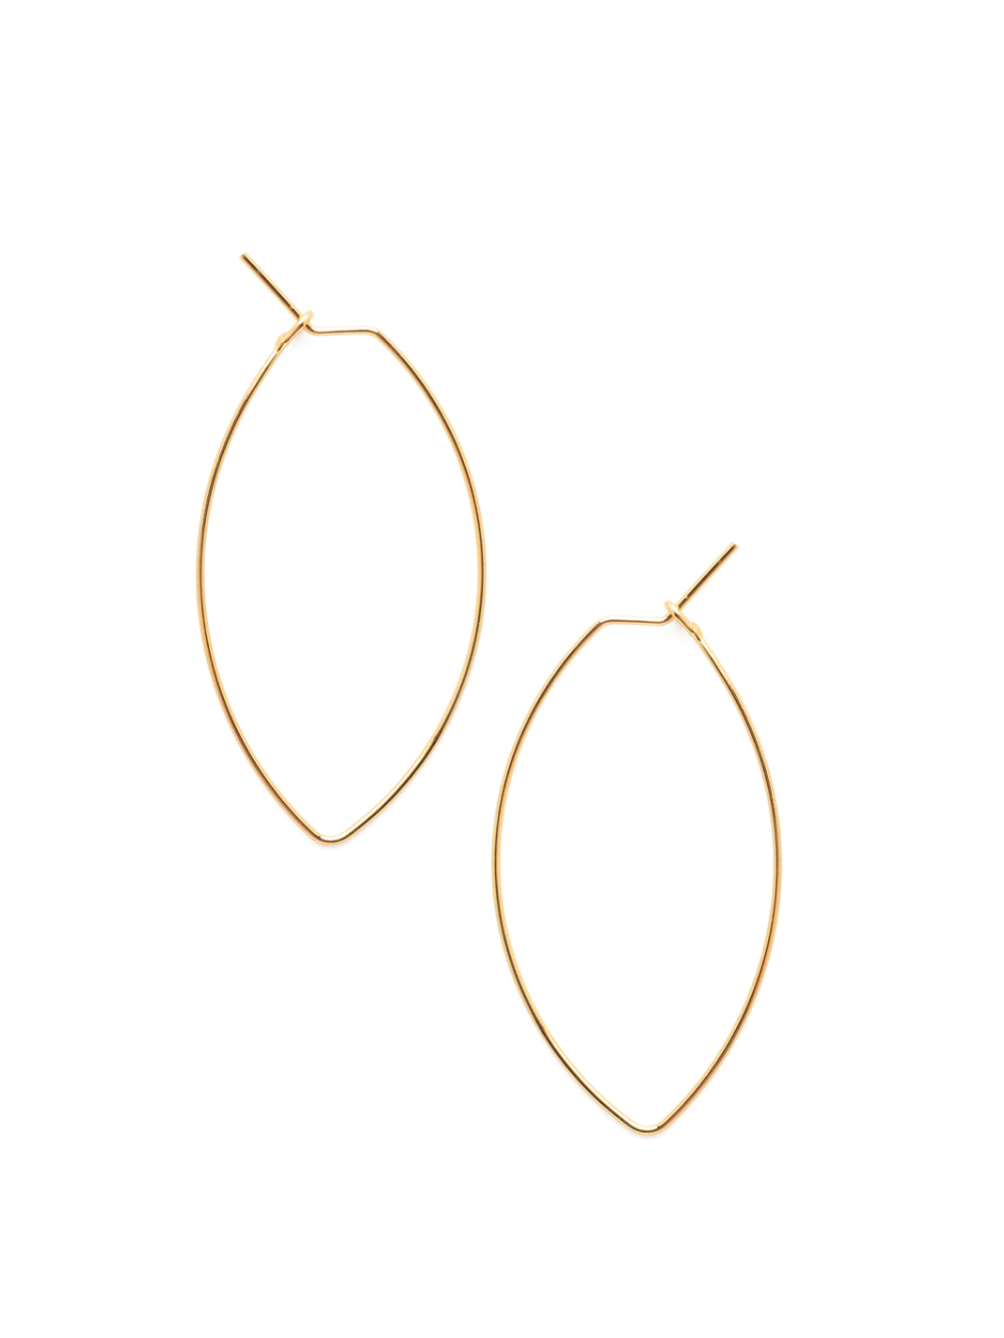 Caroline Hoop Earrings - Bright Gold